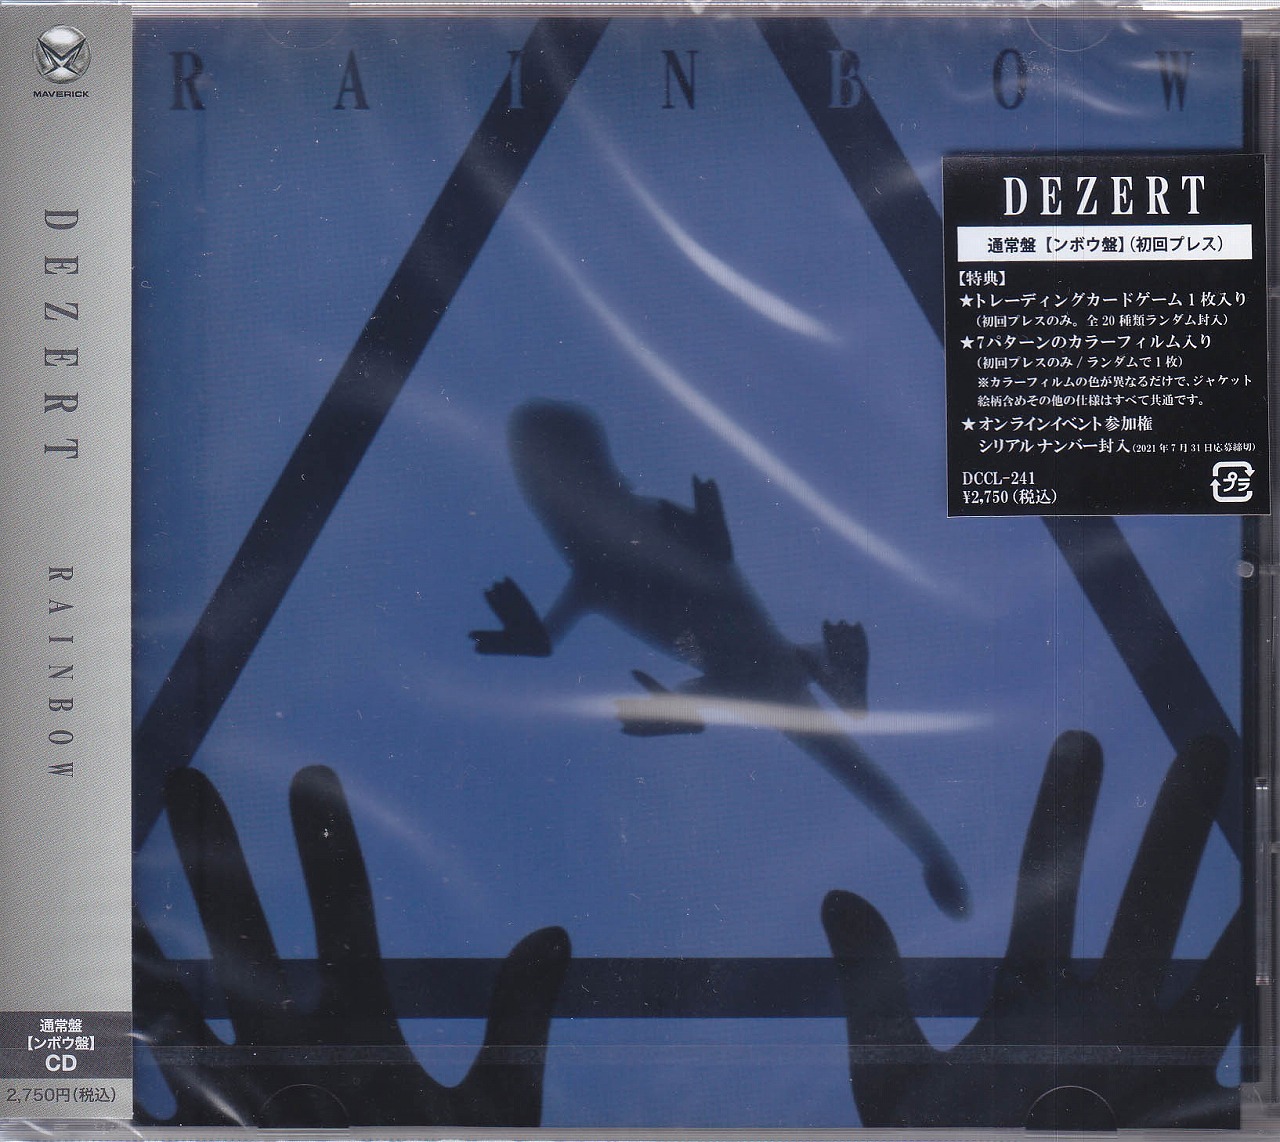 DEZERT の CD 【通常盤】 RAINBOW 【ンボウ盤】